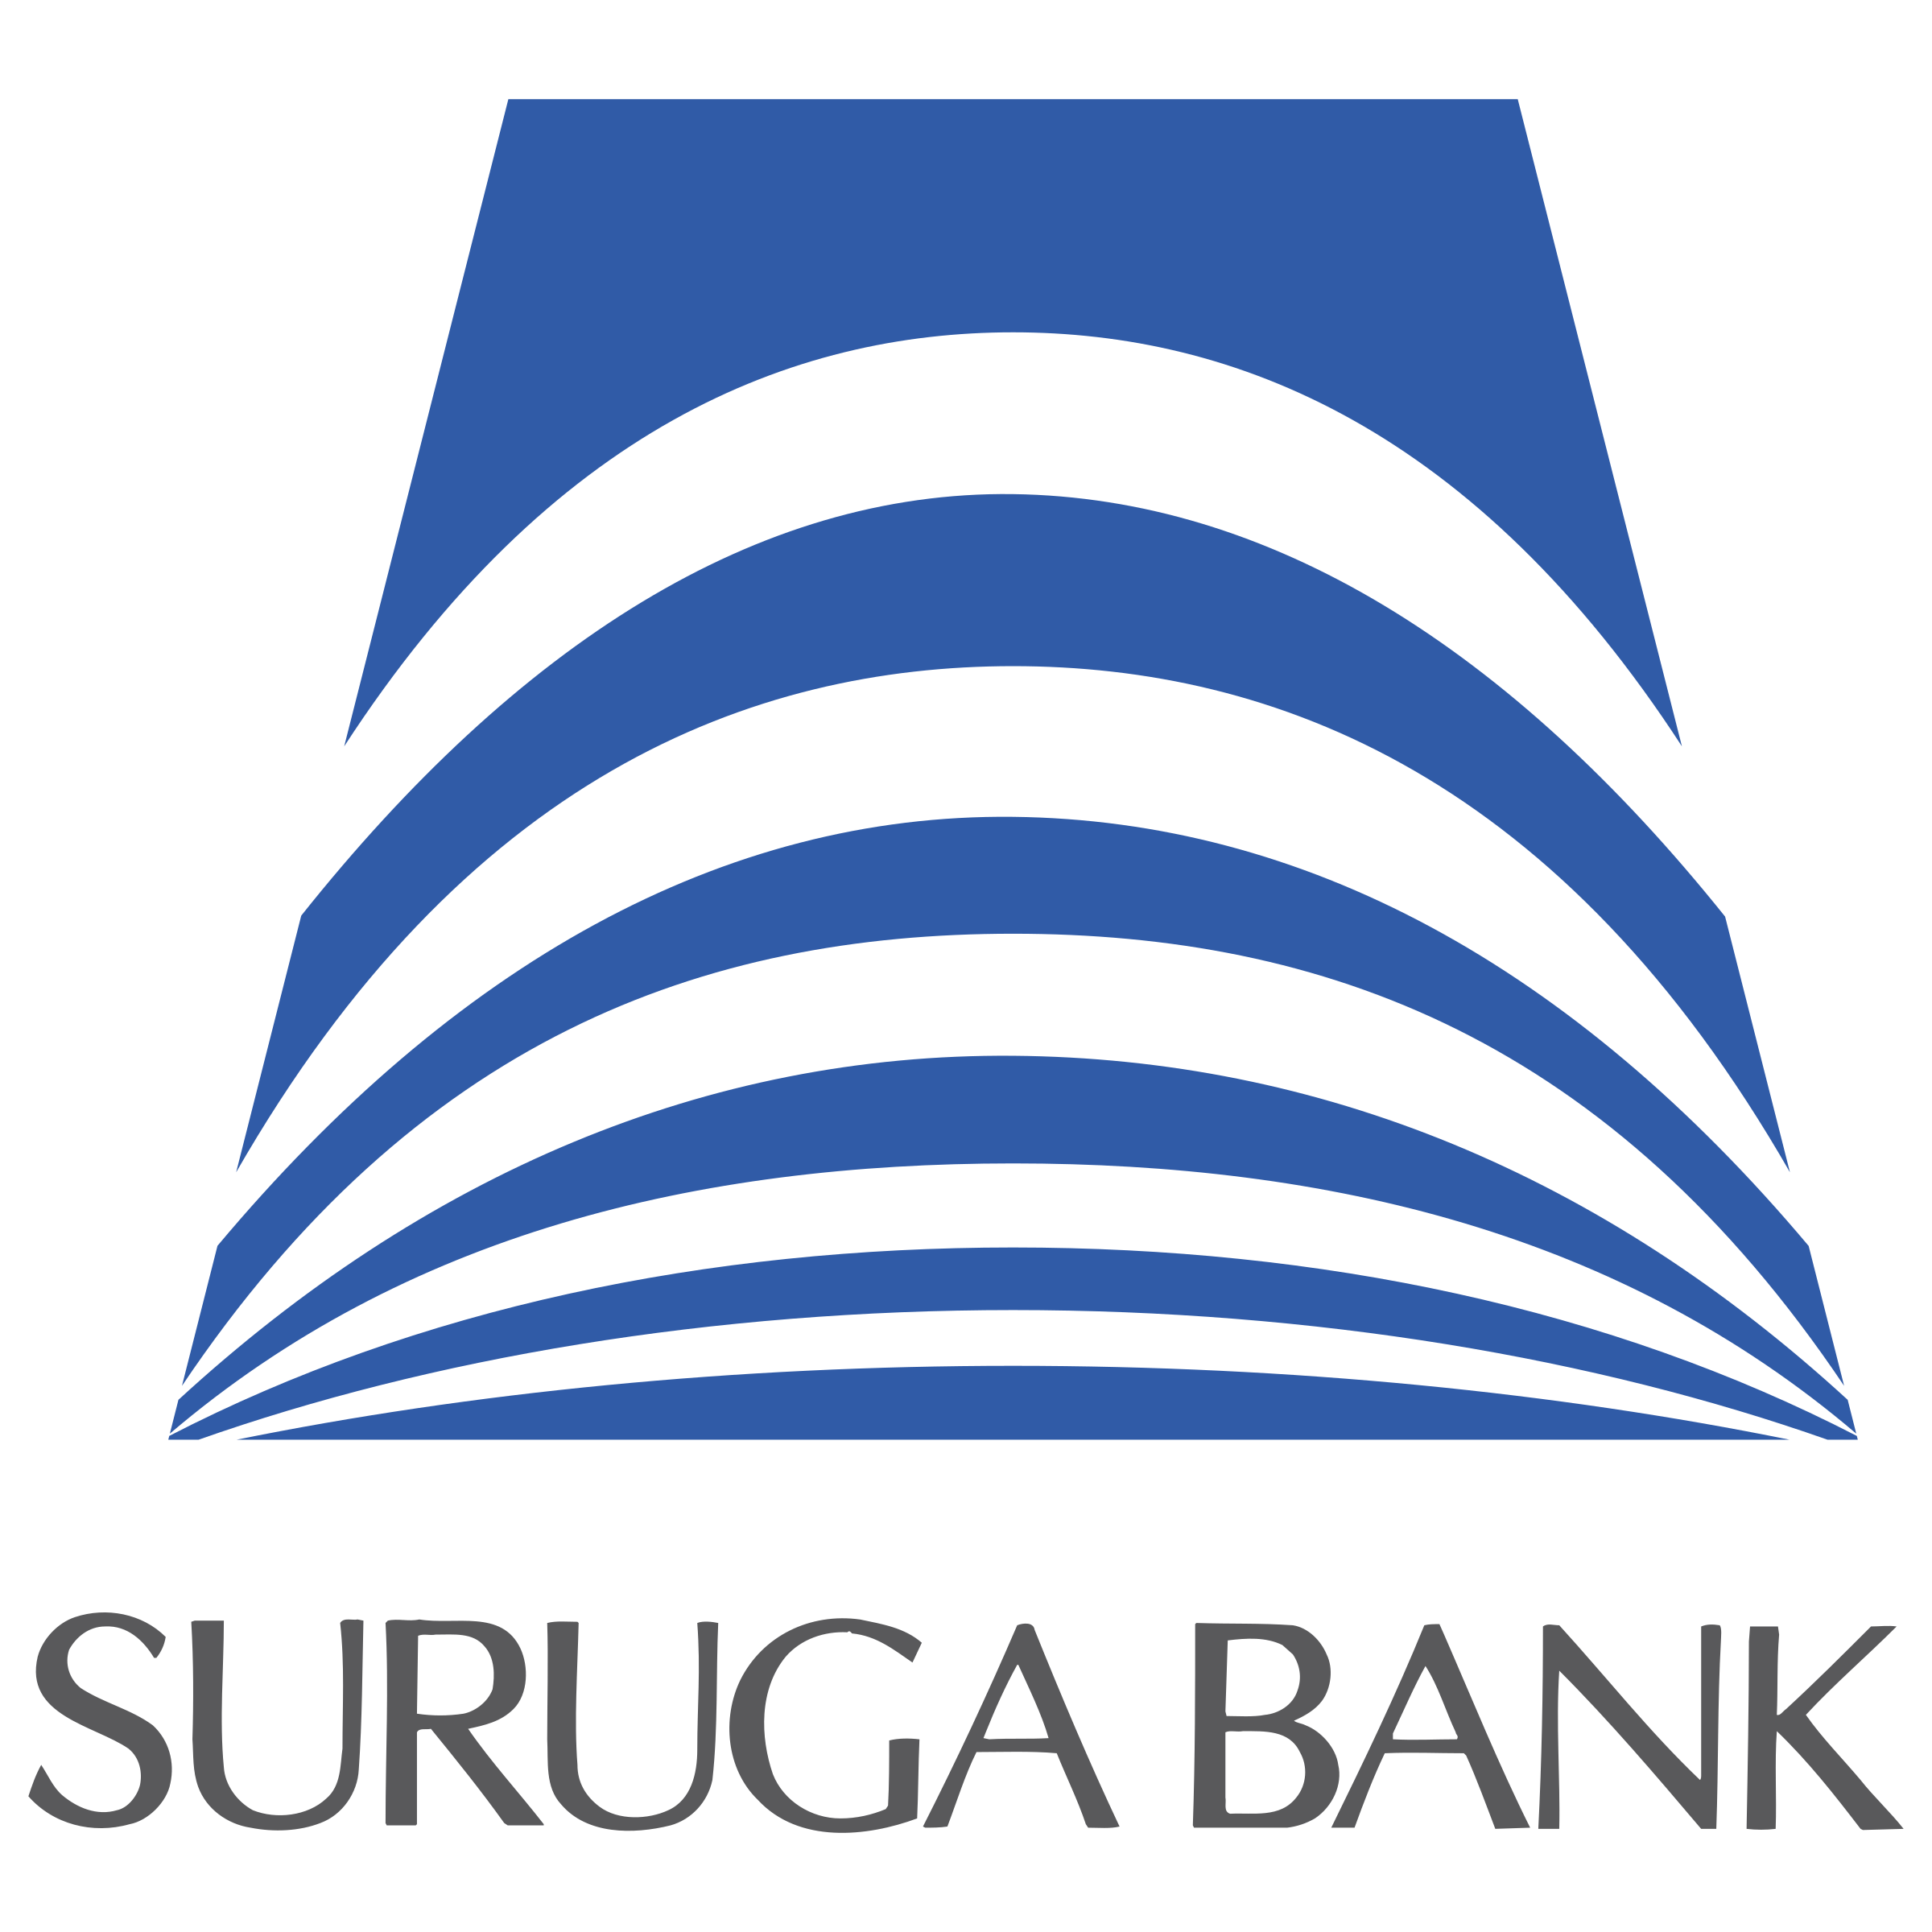 Suruga Bank
（スルガ銀行）